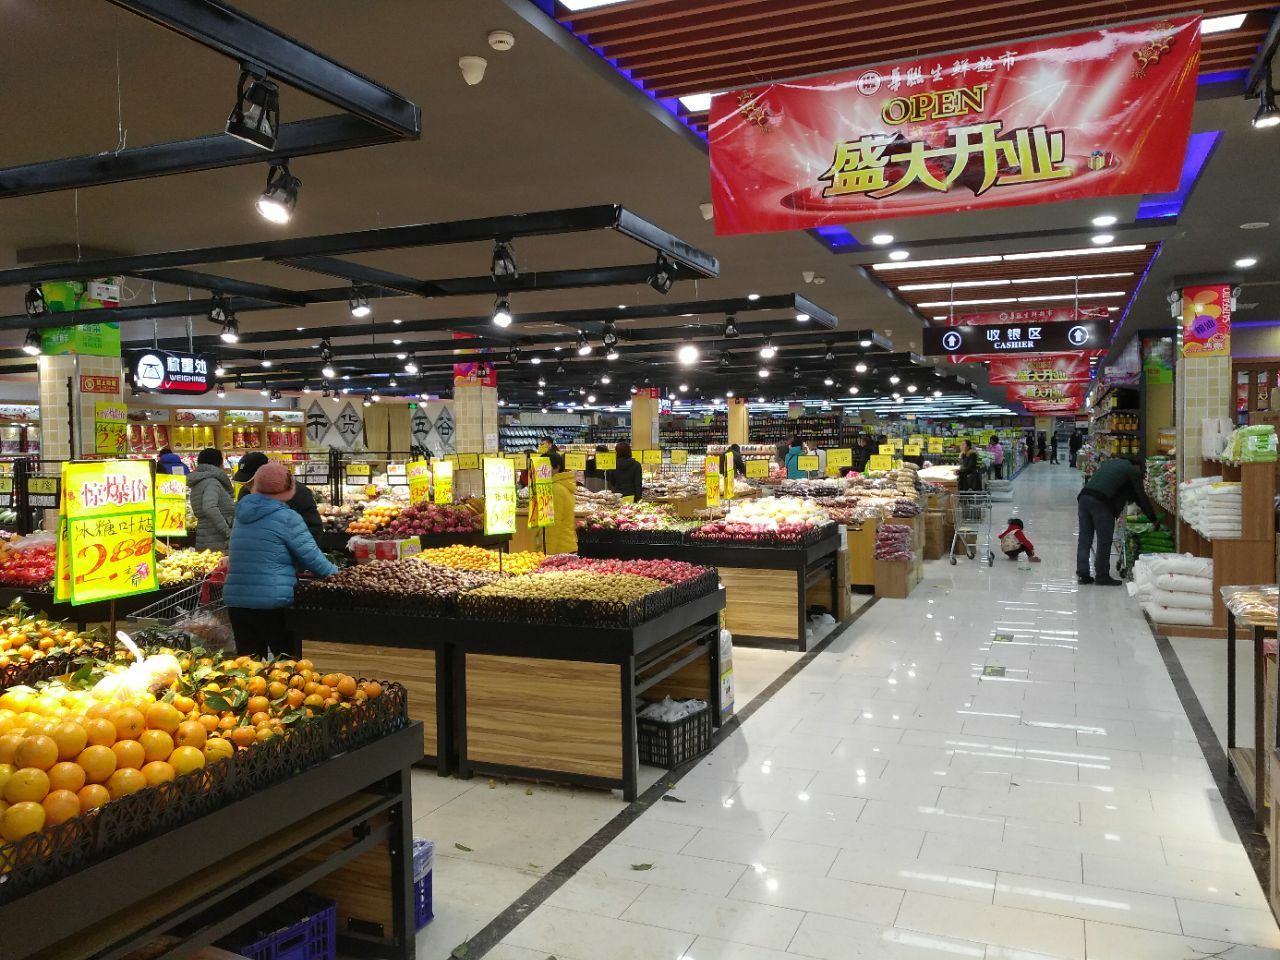 北京华联生鲜超市购物攻略,华联生鲜超市物中心/地址